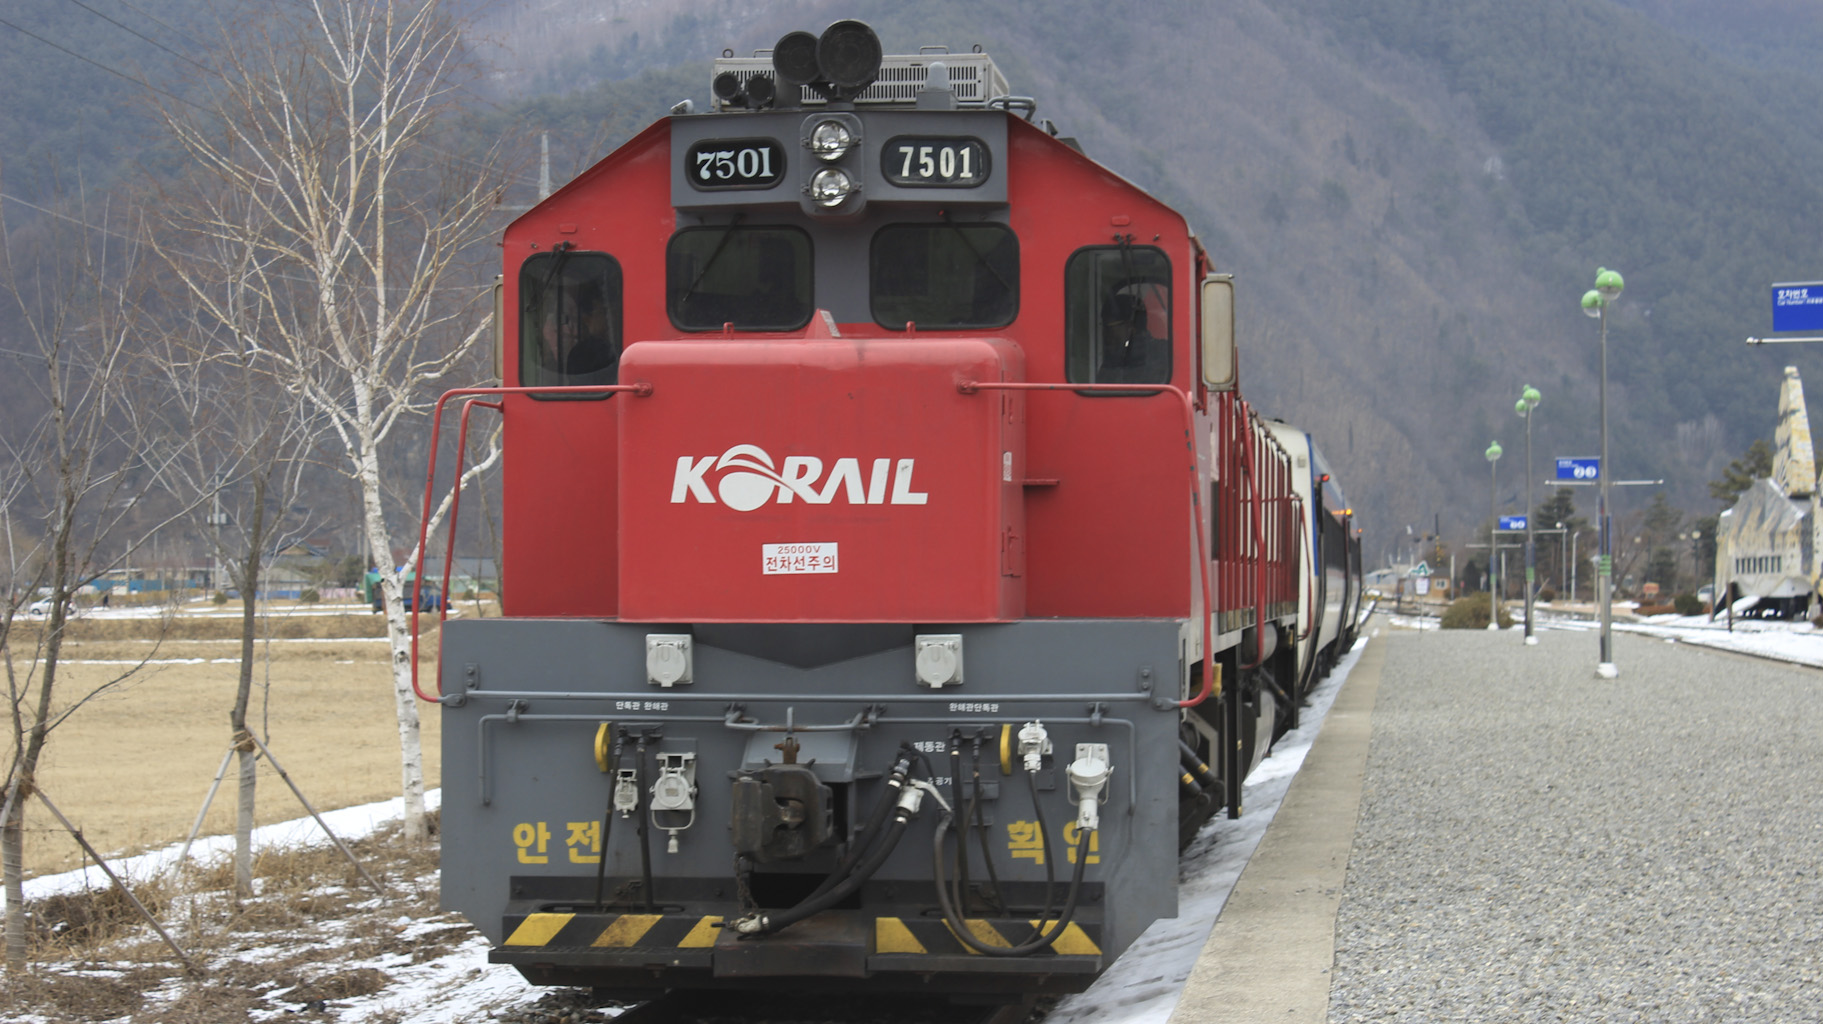 객차 두 대와 기관차 하나, 발전차 하나로 이루어진 열차다.